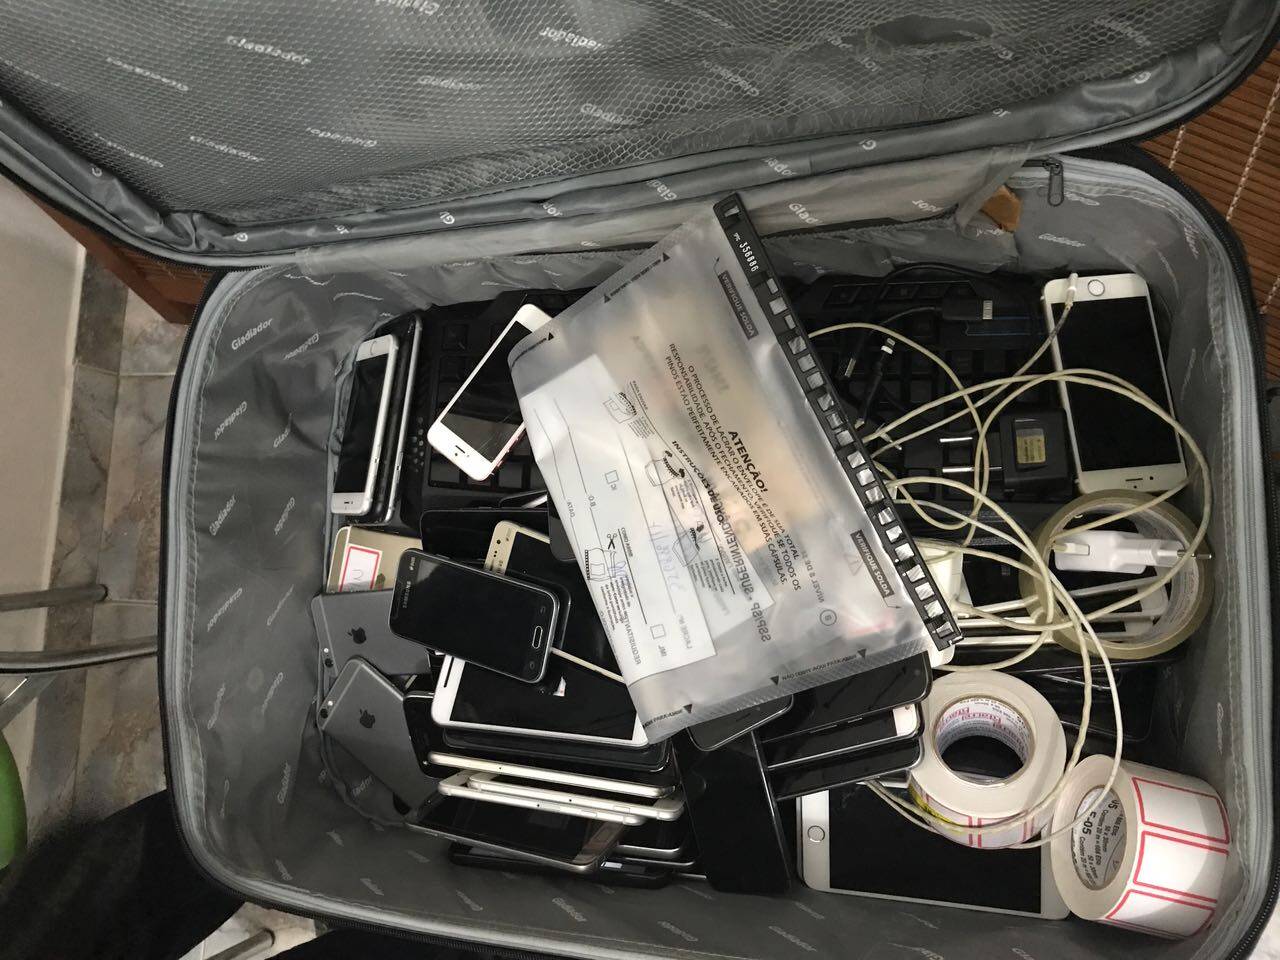 ROCAM apreendeu 167 celulares, 26 relógios, três notebooks, dez tablets e duas máquinas fotográficas.. Foto: Divulgação/ROCAM